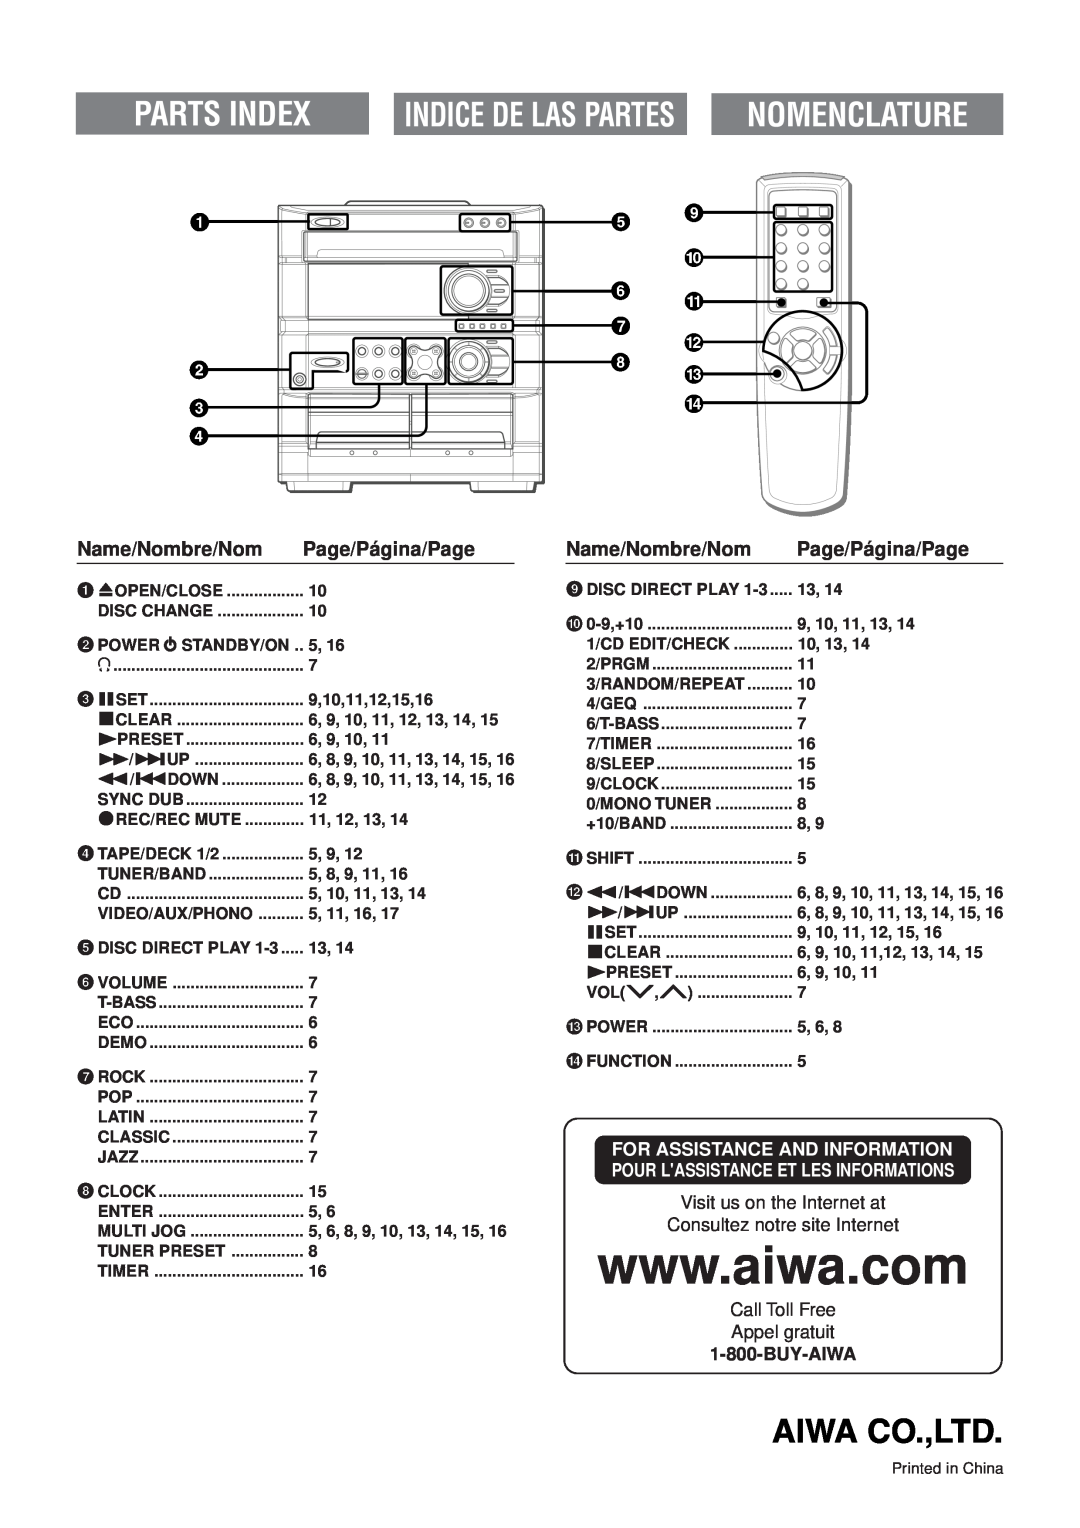 Aiwa Z-A60 Parts Index, Indice De Las Partes, Nomenclature, 1zOPEN/CLOSE, Disc Change, 2POWER 6STANDBY/ON, 3aSET, sCLEAR 